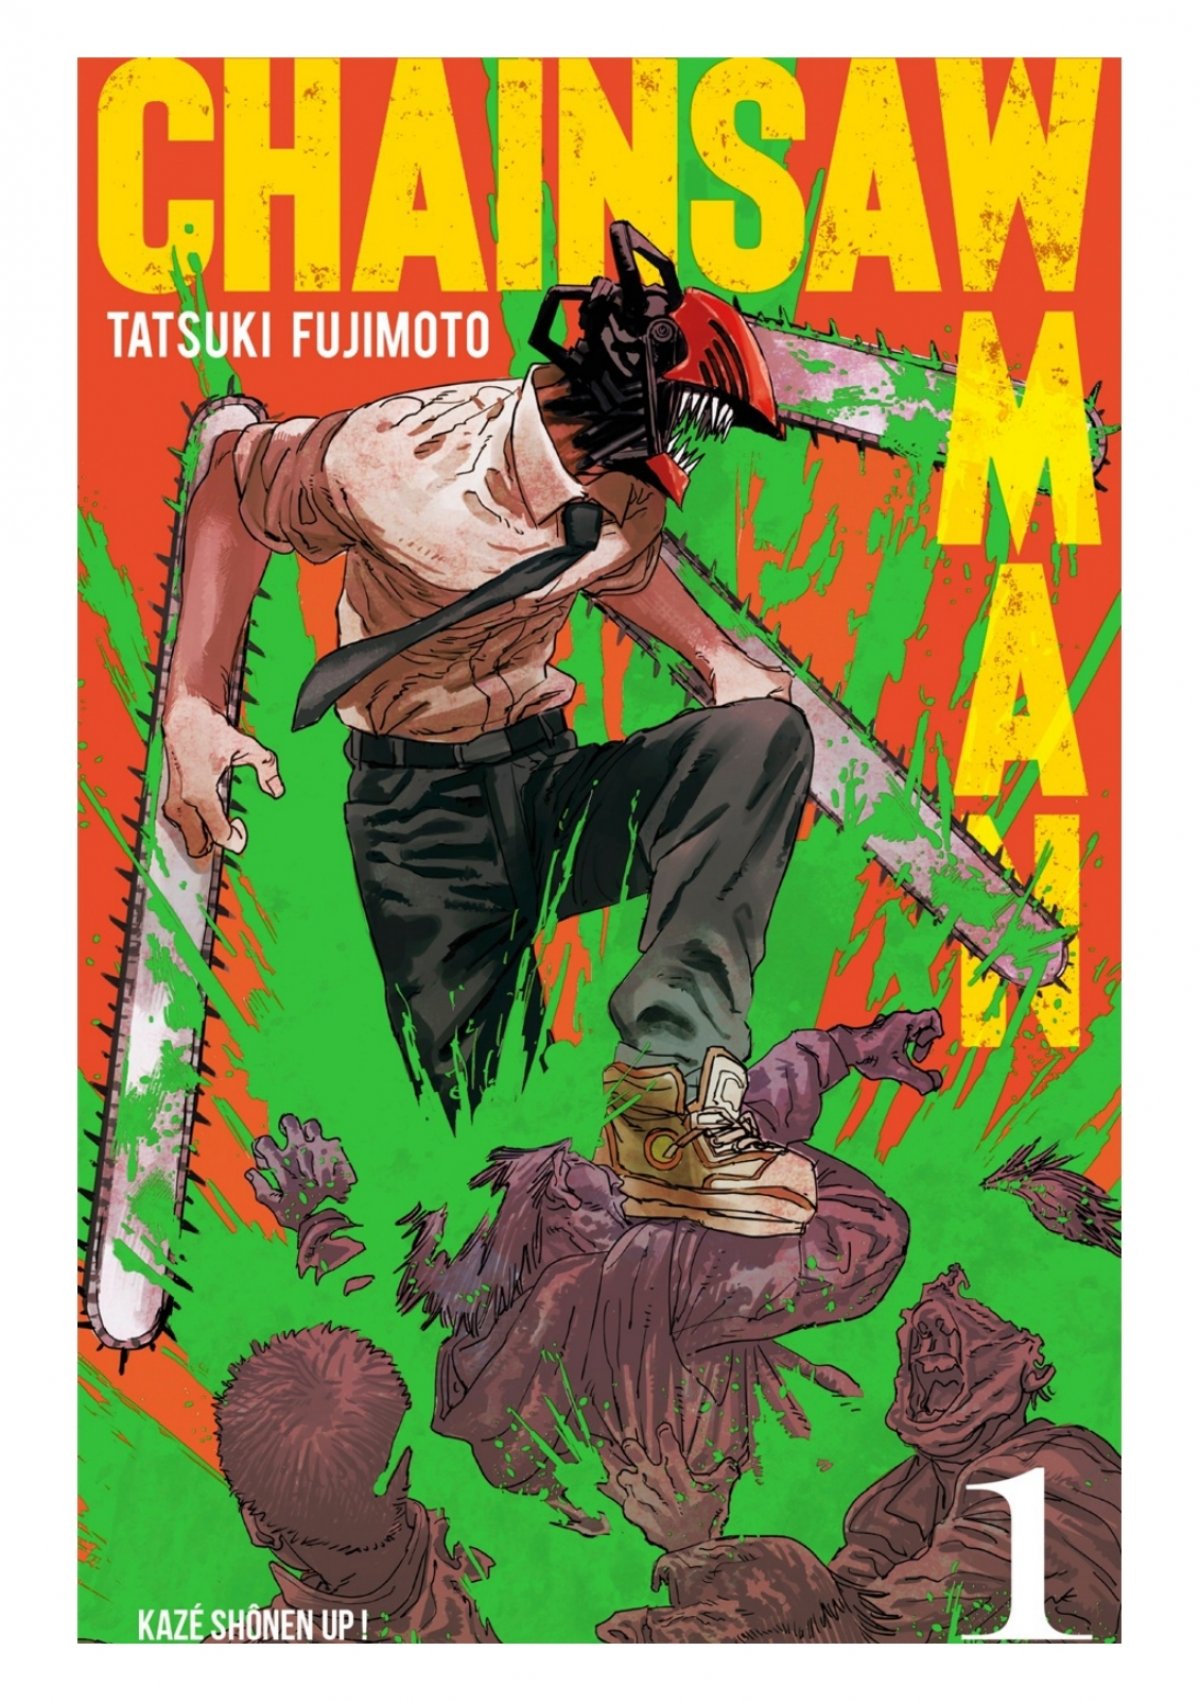 Ebook] Reading Chainsaw Man Vol. 13 mobiePub By Tatsuki Fujimoto by  deasavaesa - Issuu